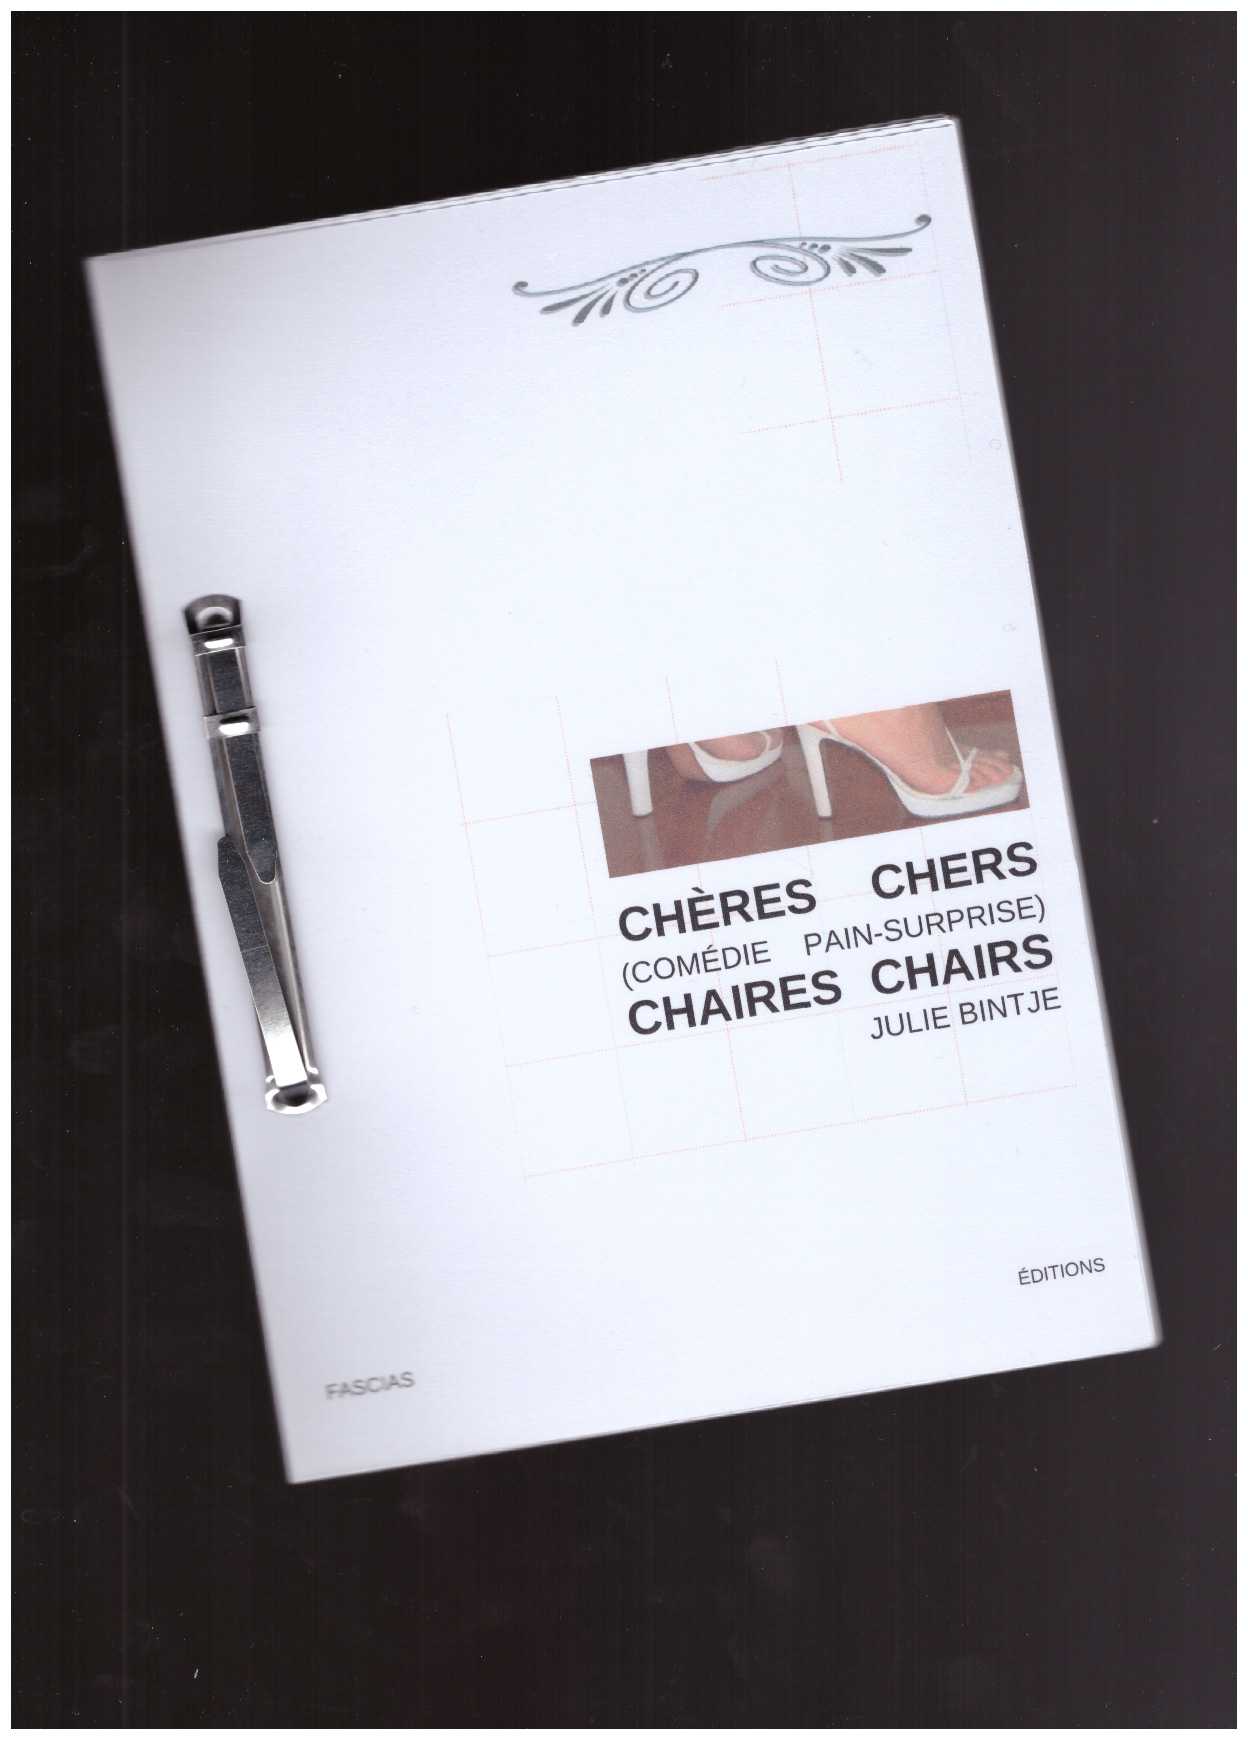 BINTJE, Julie - Fascias éditions #2 - Chères Chers Chaires Chairs